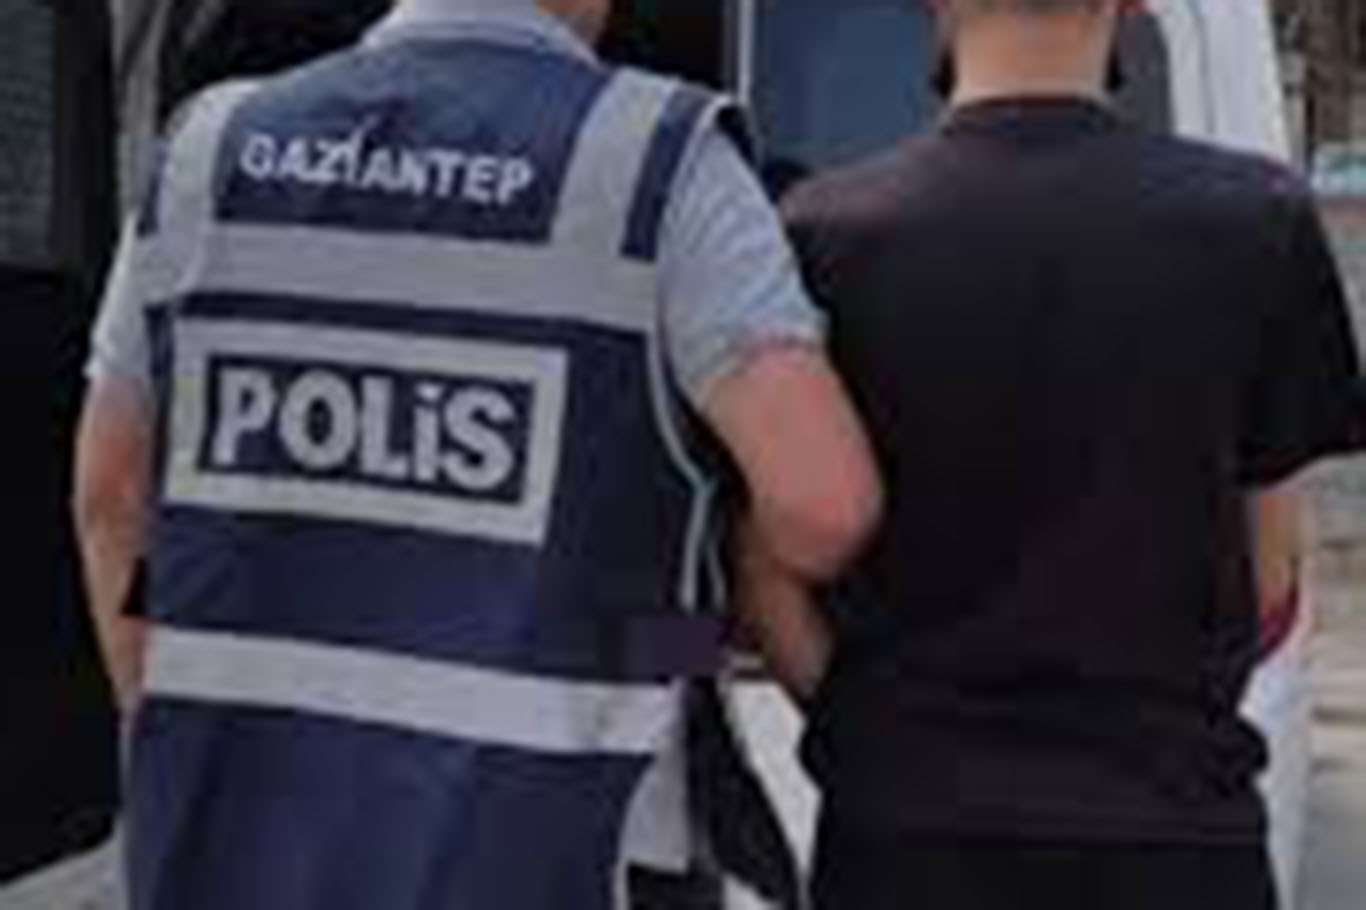 Gaziantep’te suç kaydı bulunan 1 kişi tutuklandı